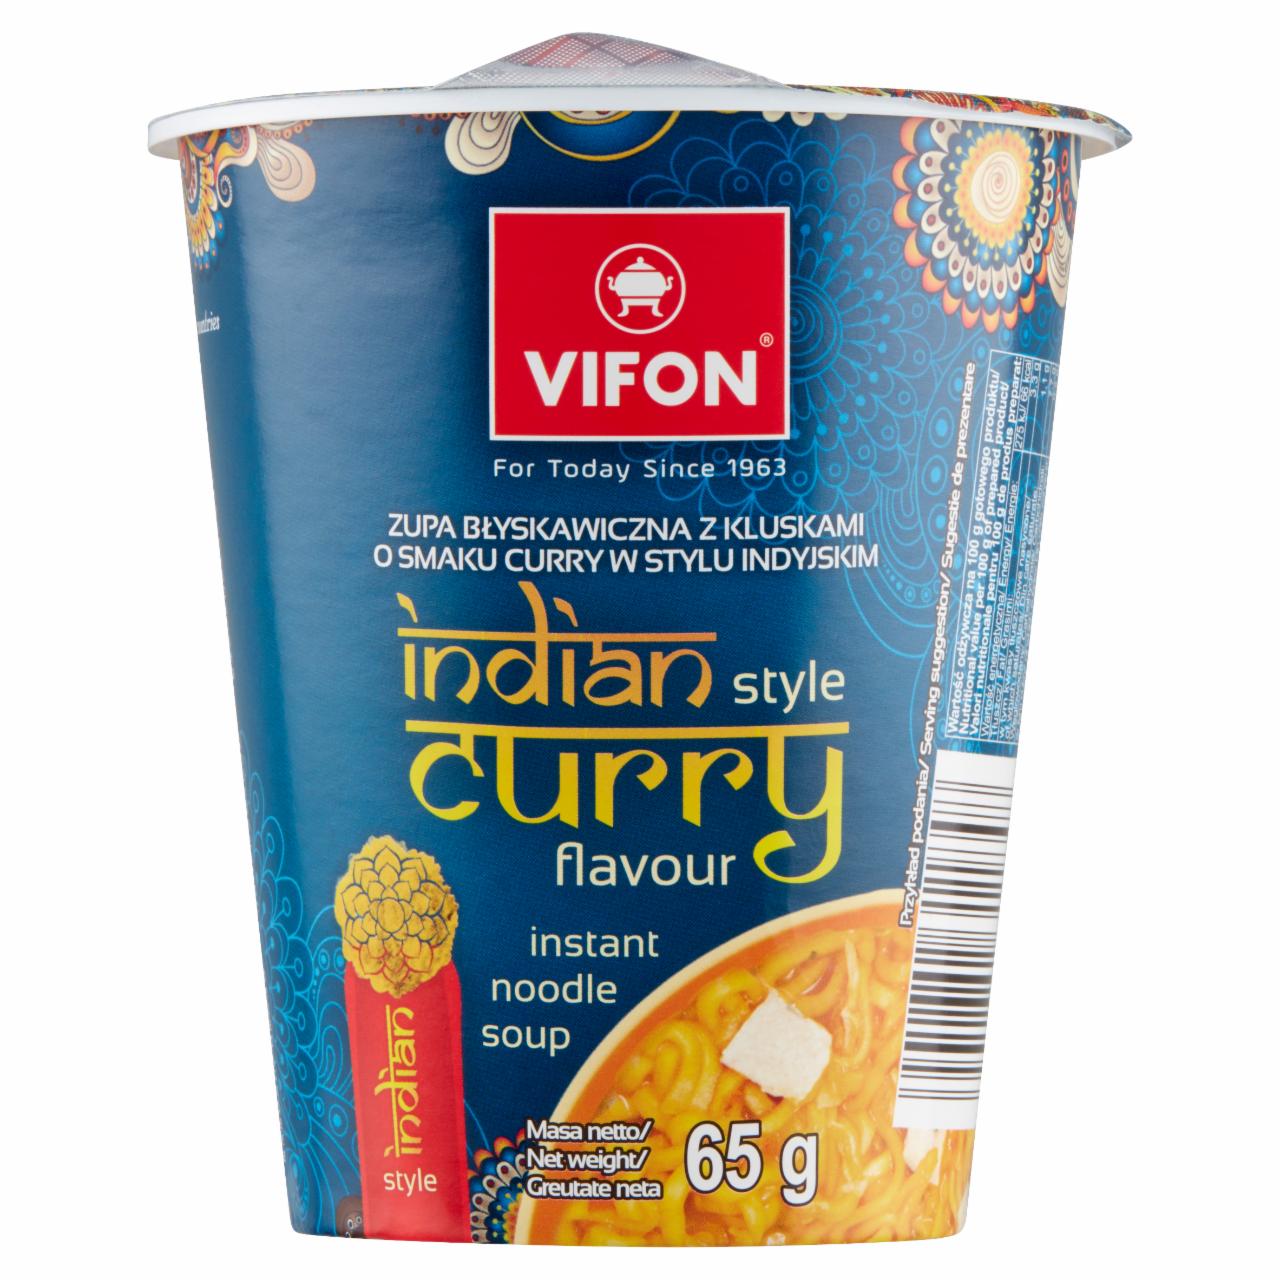 Zdjęcia - Zupa z kluskami o smaku curry w stylu indyjskim Vifon